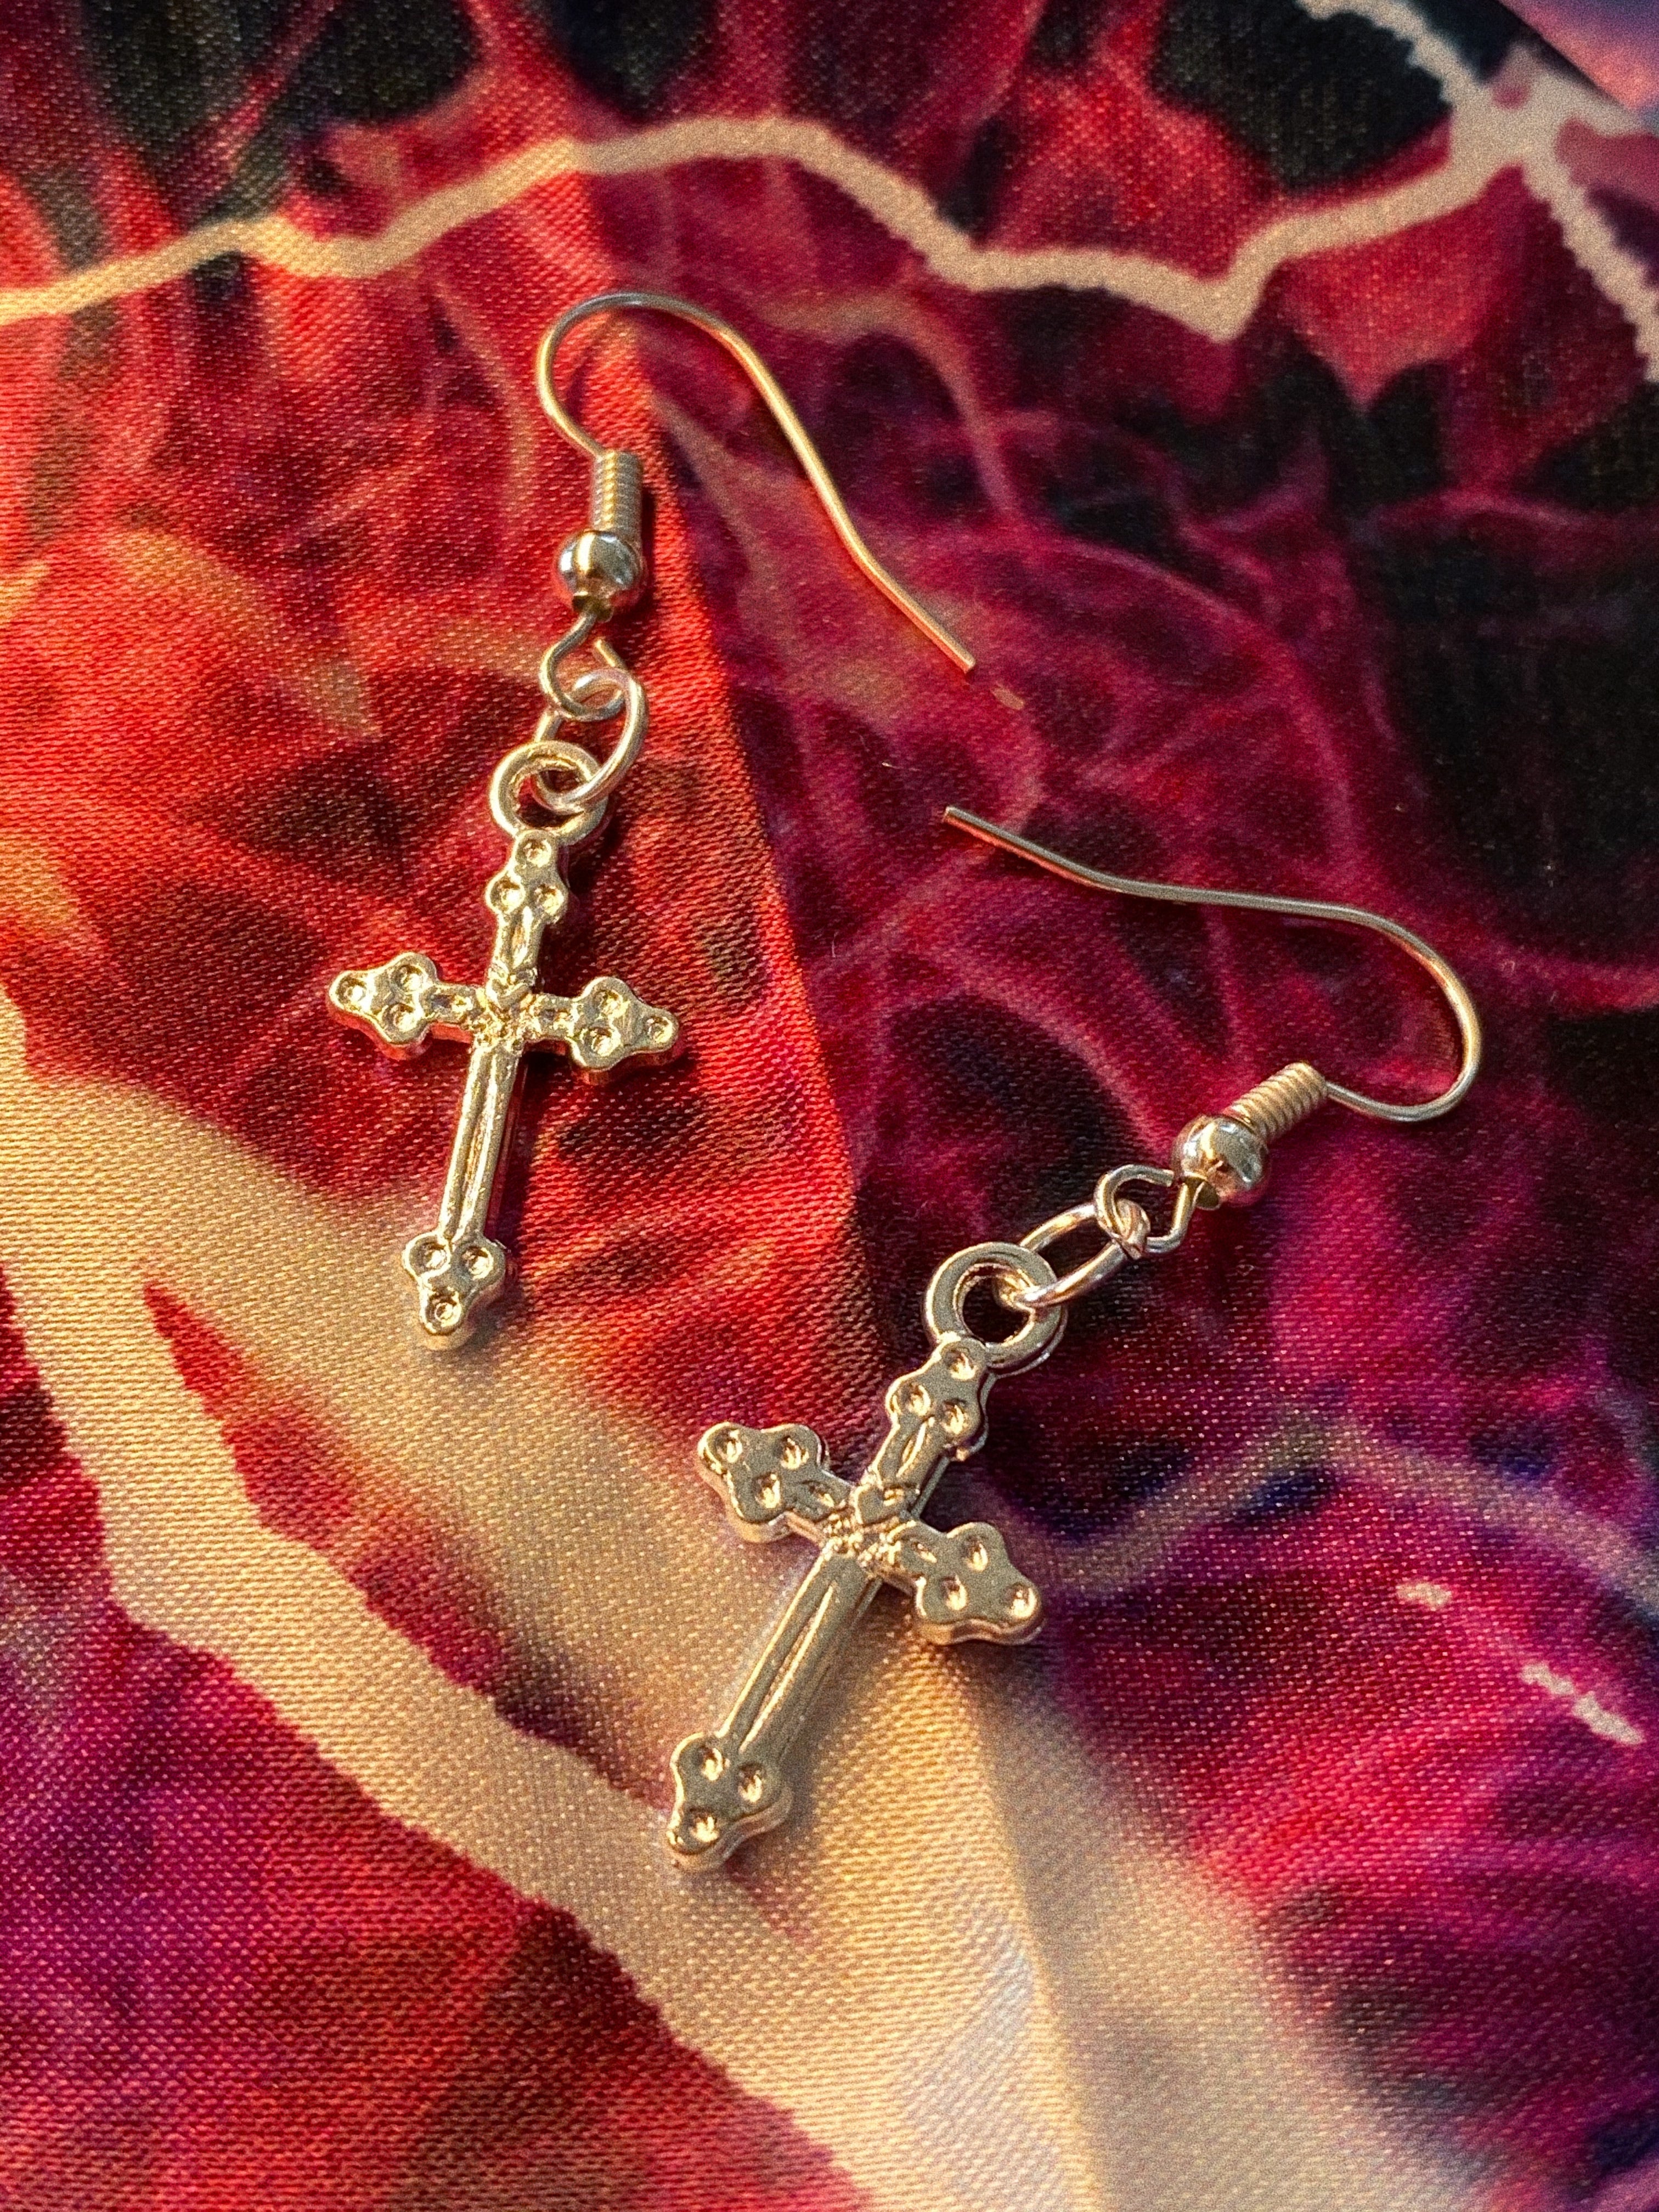 Silver Cross earrings